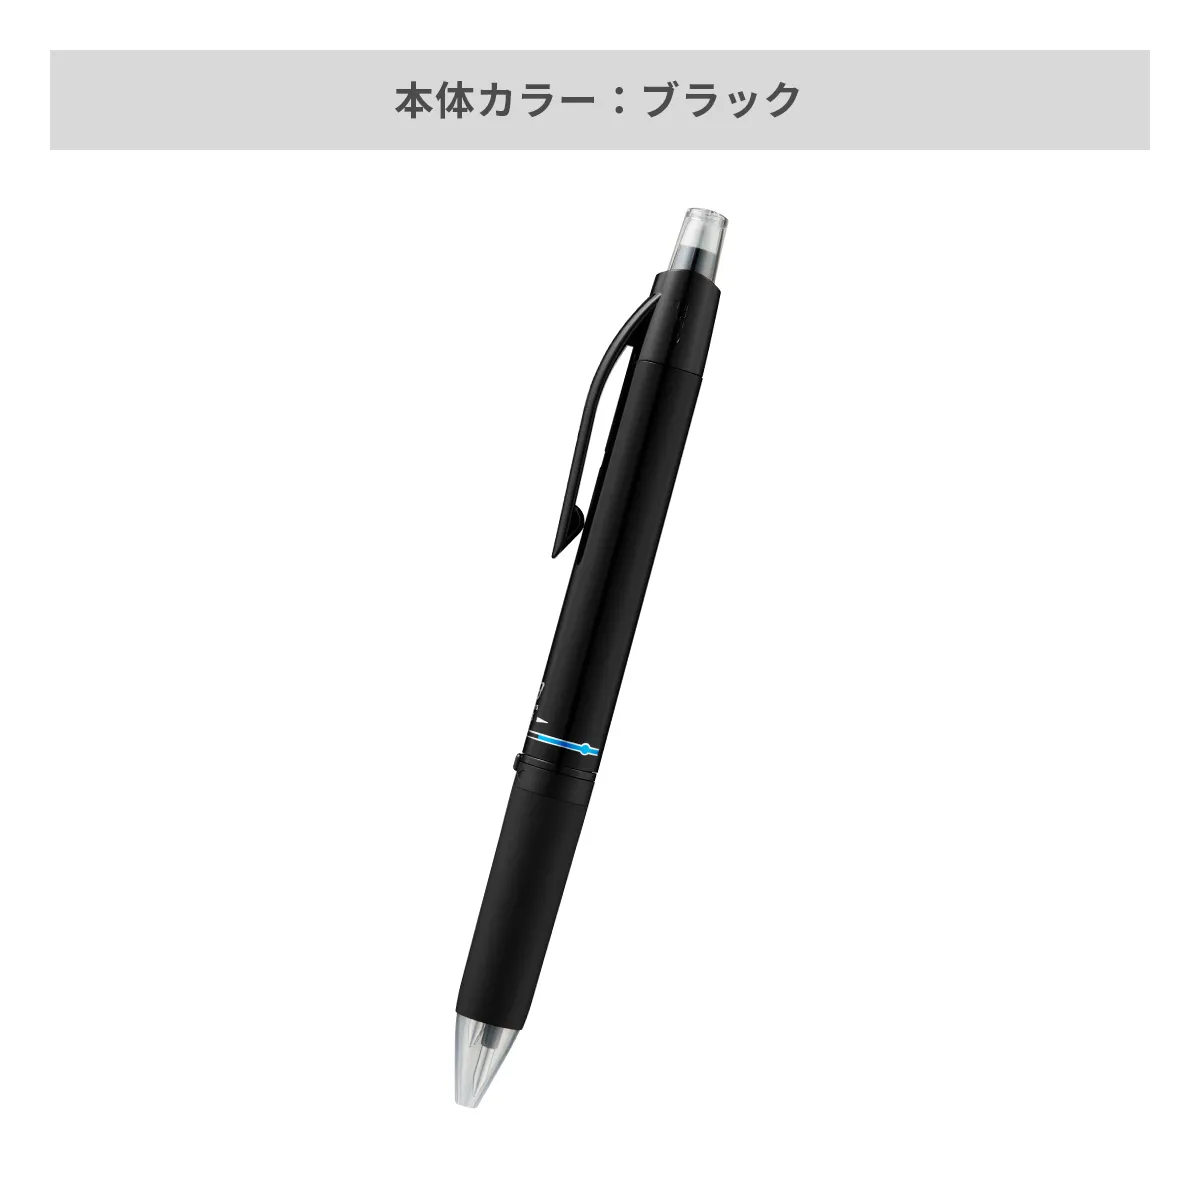 三菱鉛筆 ユニボール アールイー3 0.5mm【名入れボールペン / パッド印刷】 画像4